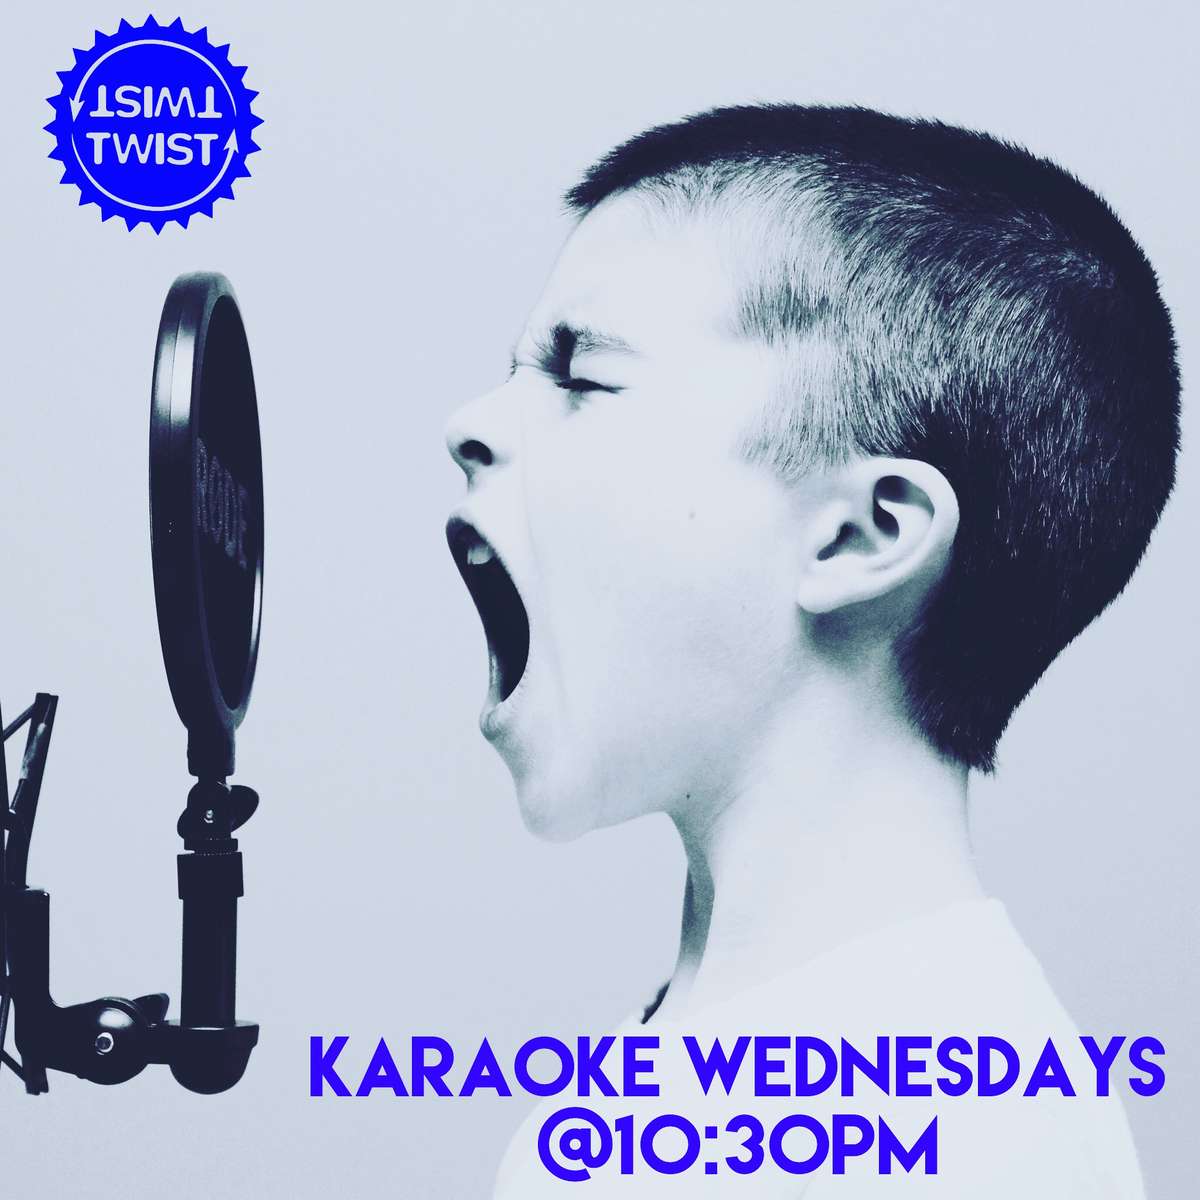 Wednesday - Karaoke Night